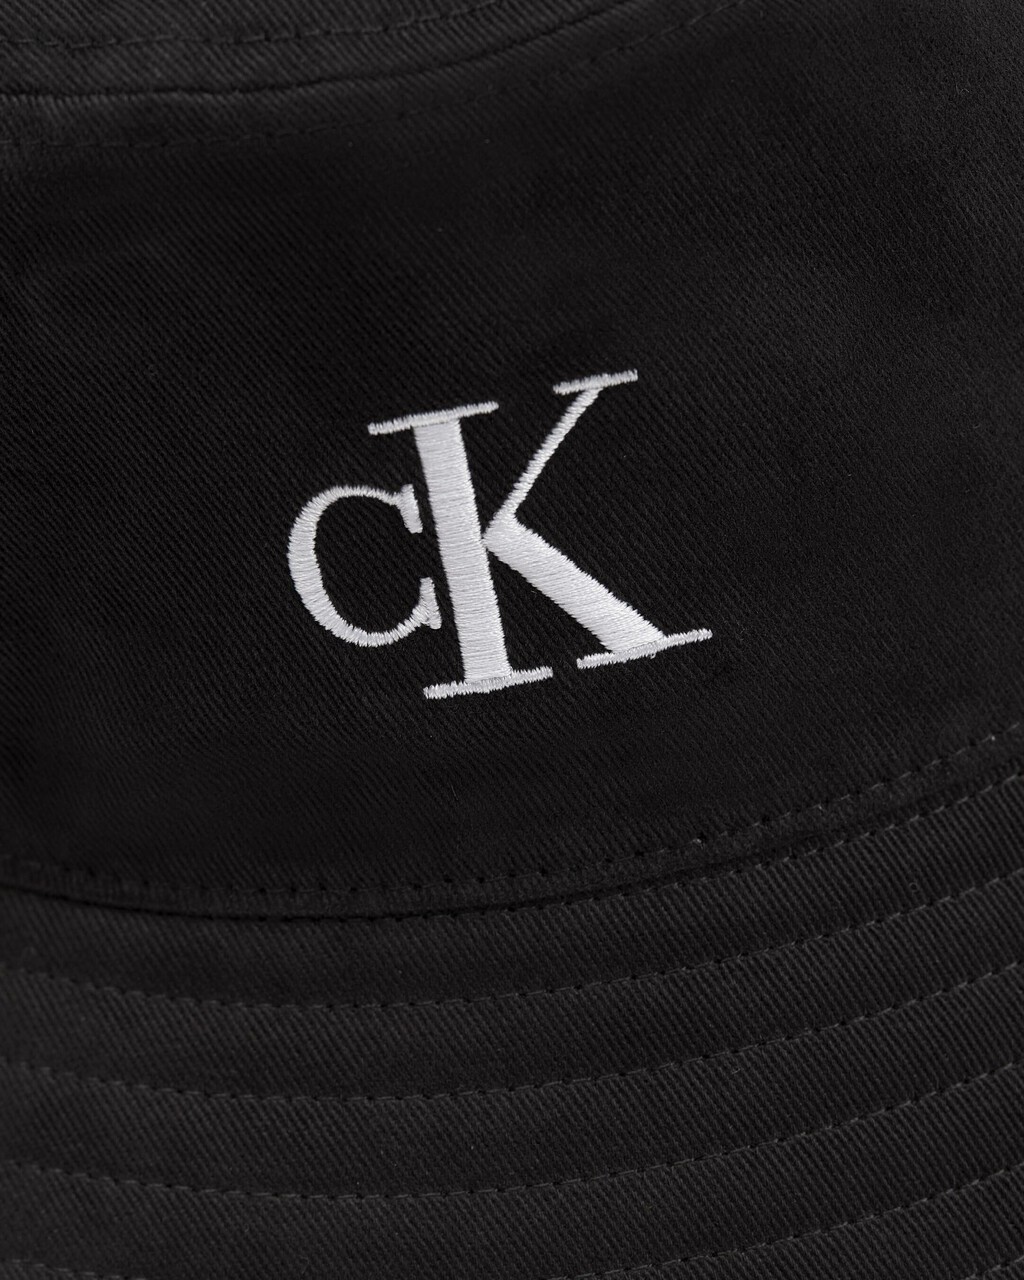 CK MONOGRAM 棉質漁夫帽, BLACK, hi-res